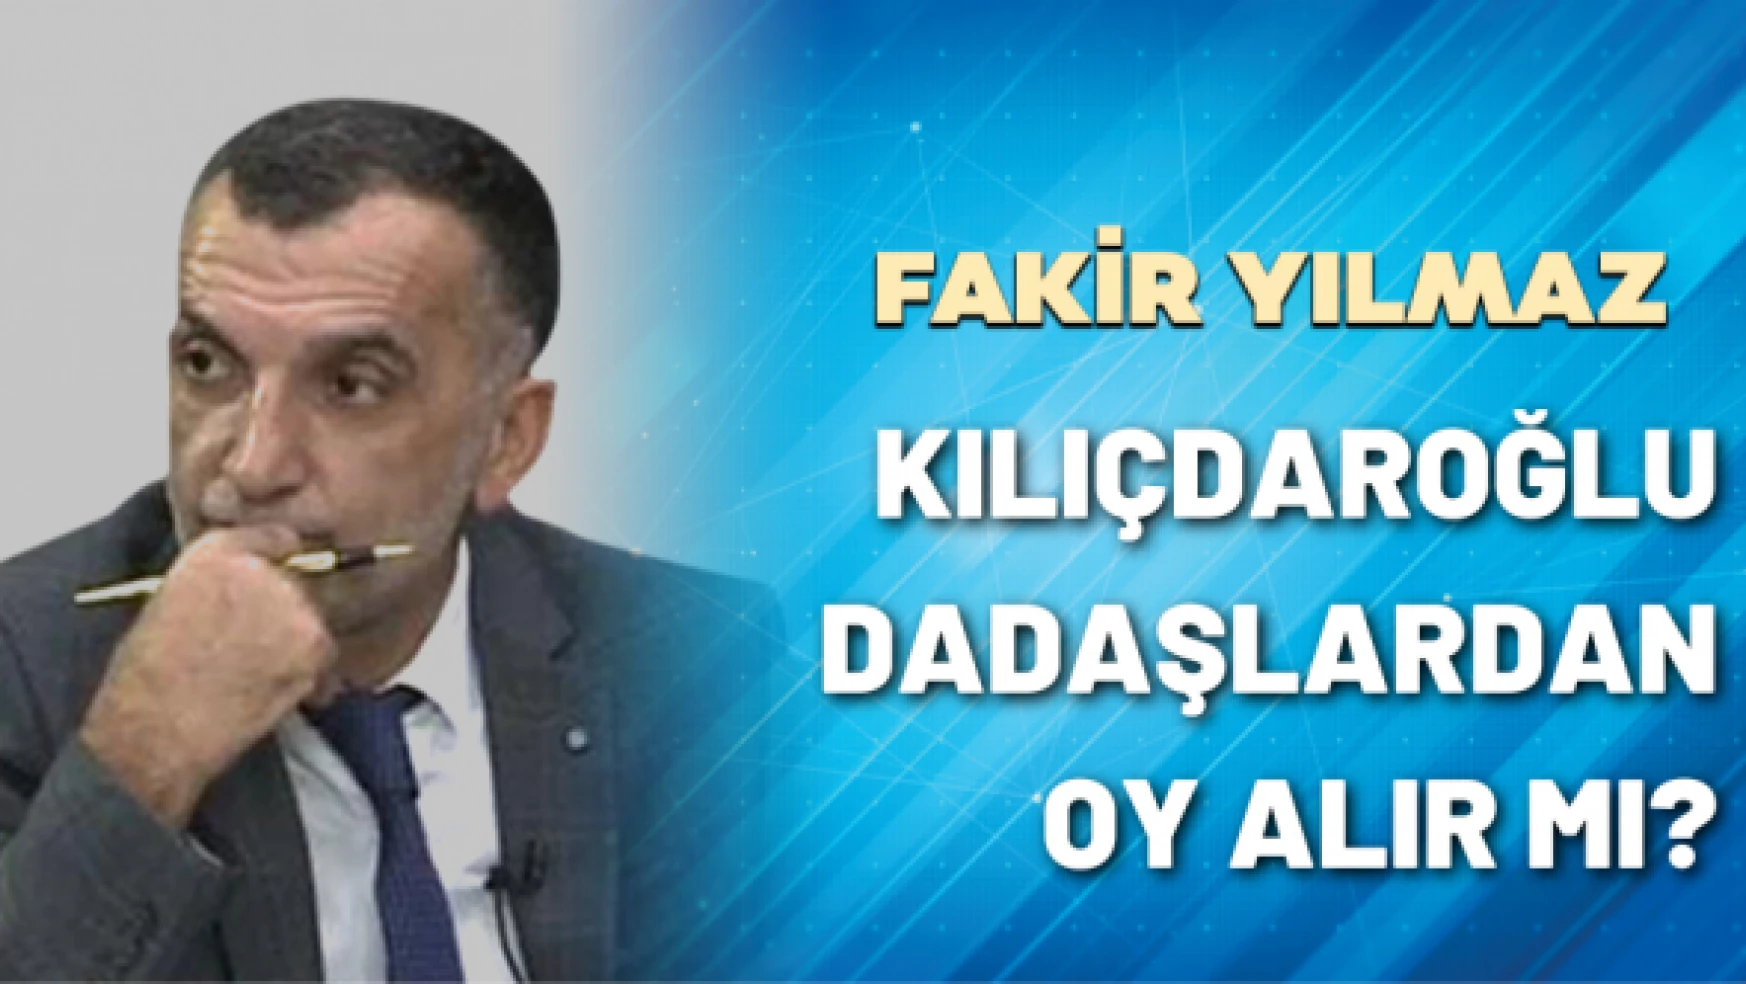 Gazeteci Fakir Yılmaz yazdı: Kılıçdaroğlu dadaşlardan oy alır mı?